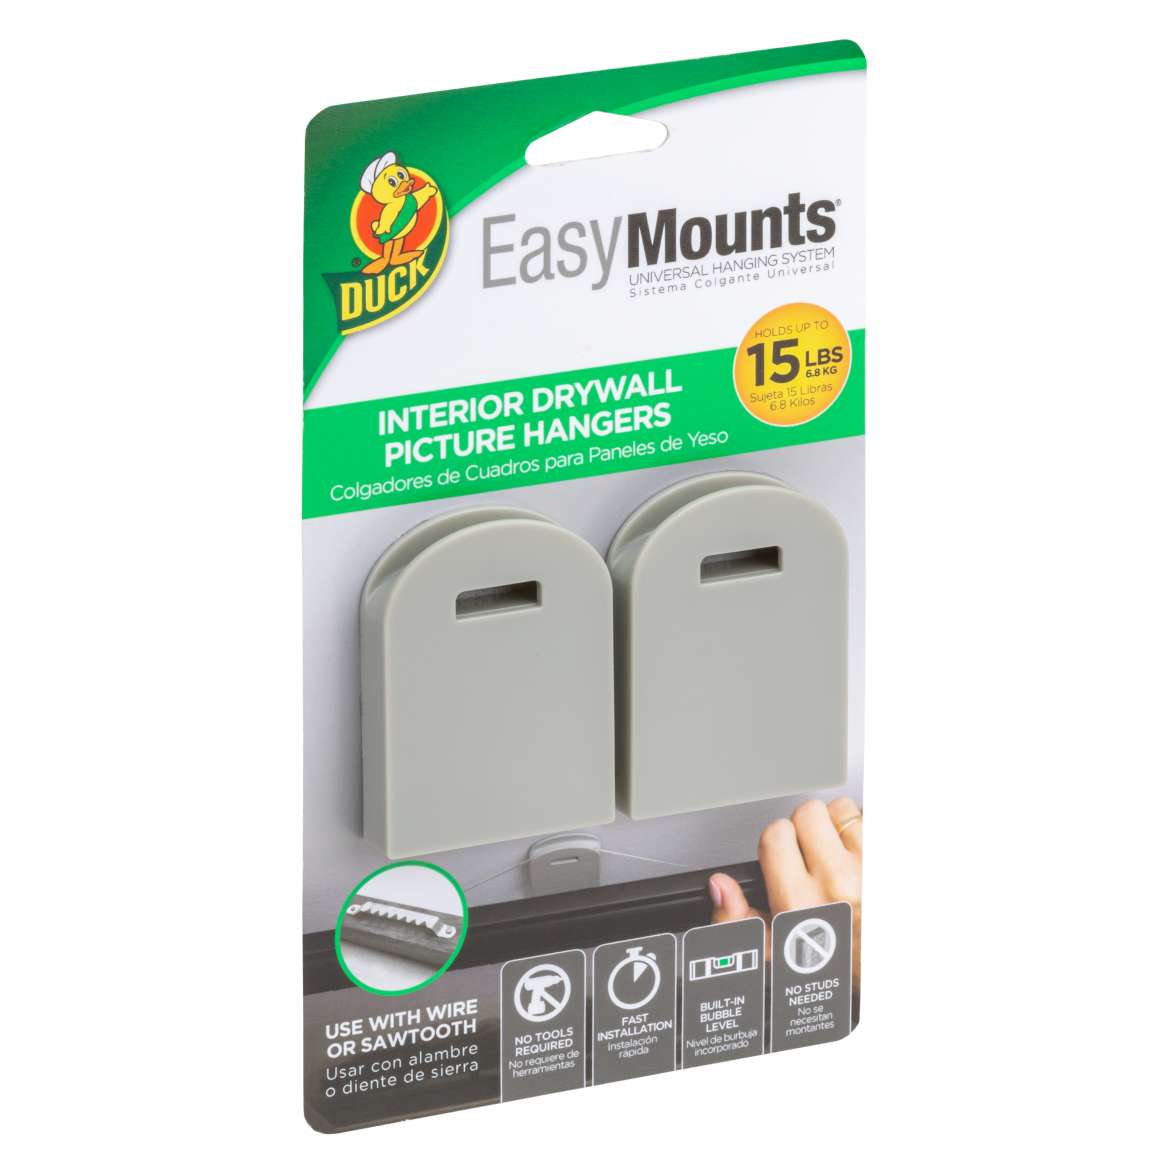 Duck® EasyMounts® Interior Drywall Picture Hanger